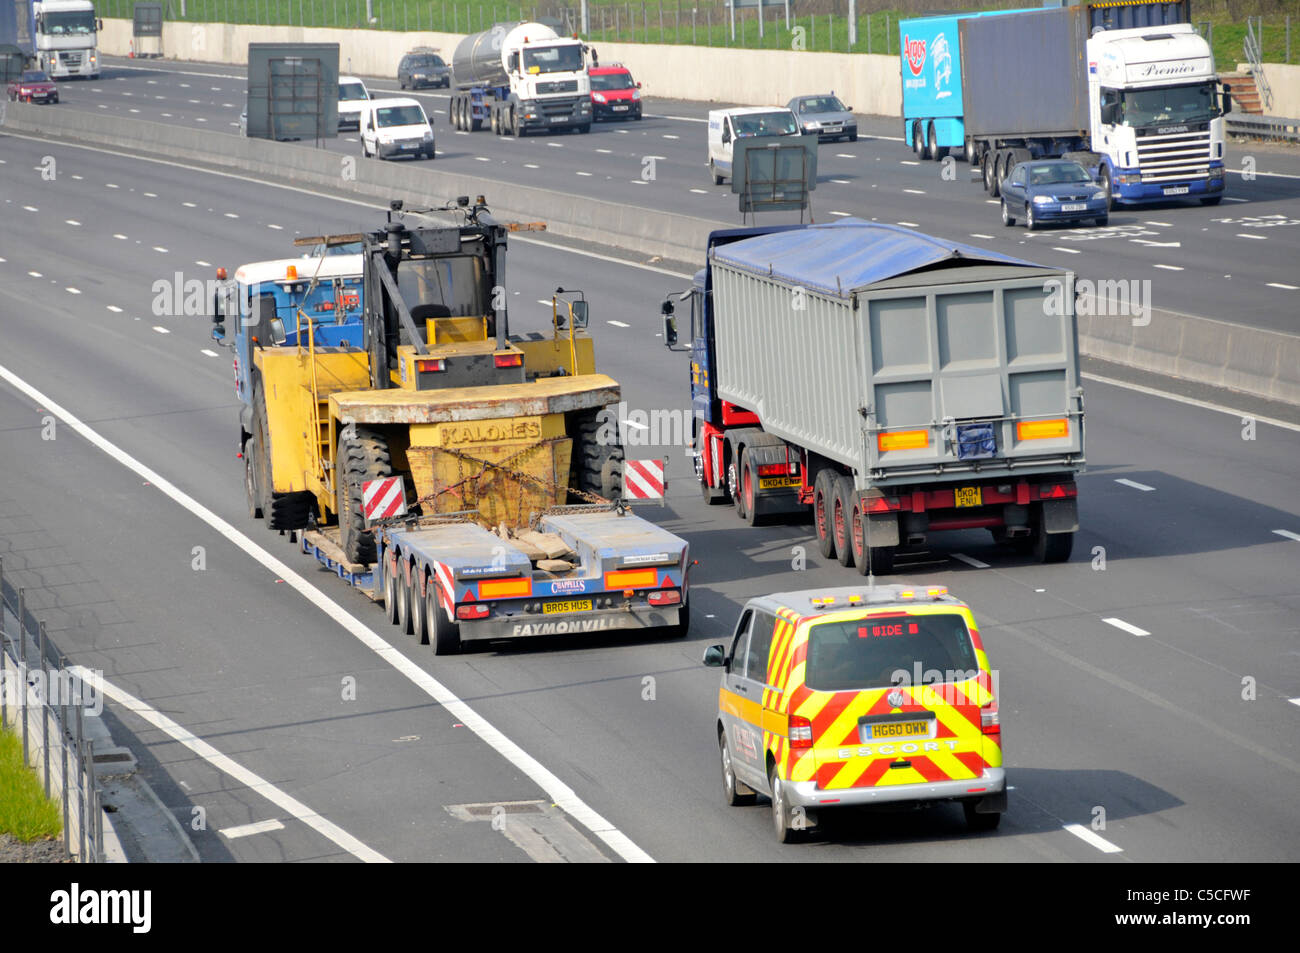 Chargeur faible poids lourds camion remorque articulée & camion chargé de matériel de construction à l'échelle de charge en surplomb en voiture sur l'autoroute britannique avec escort van Banque D'Images